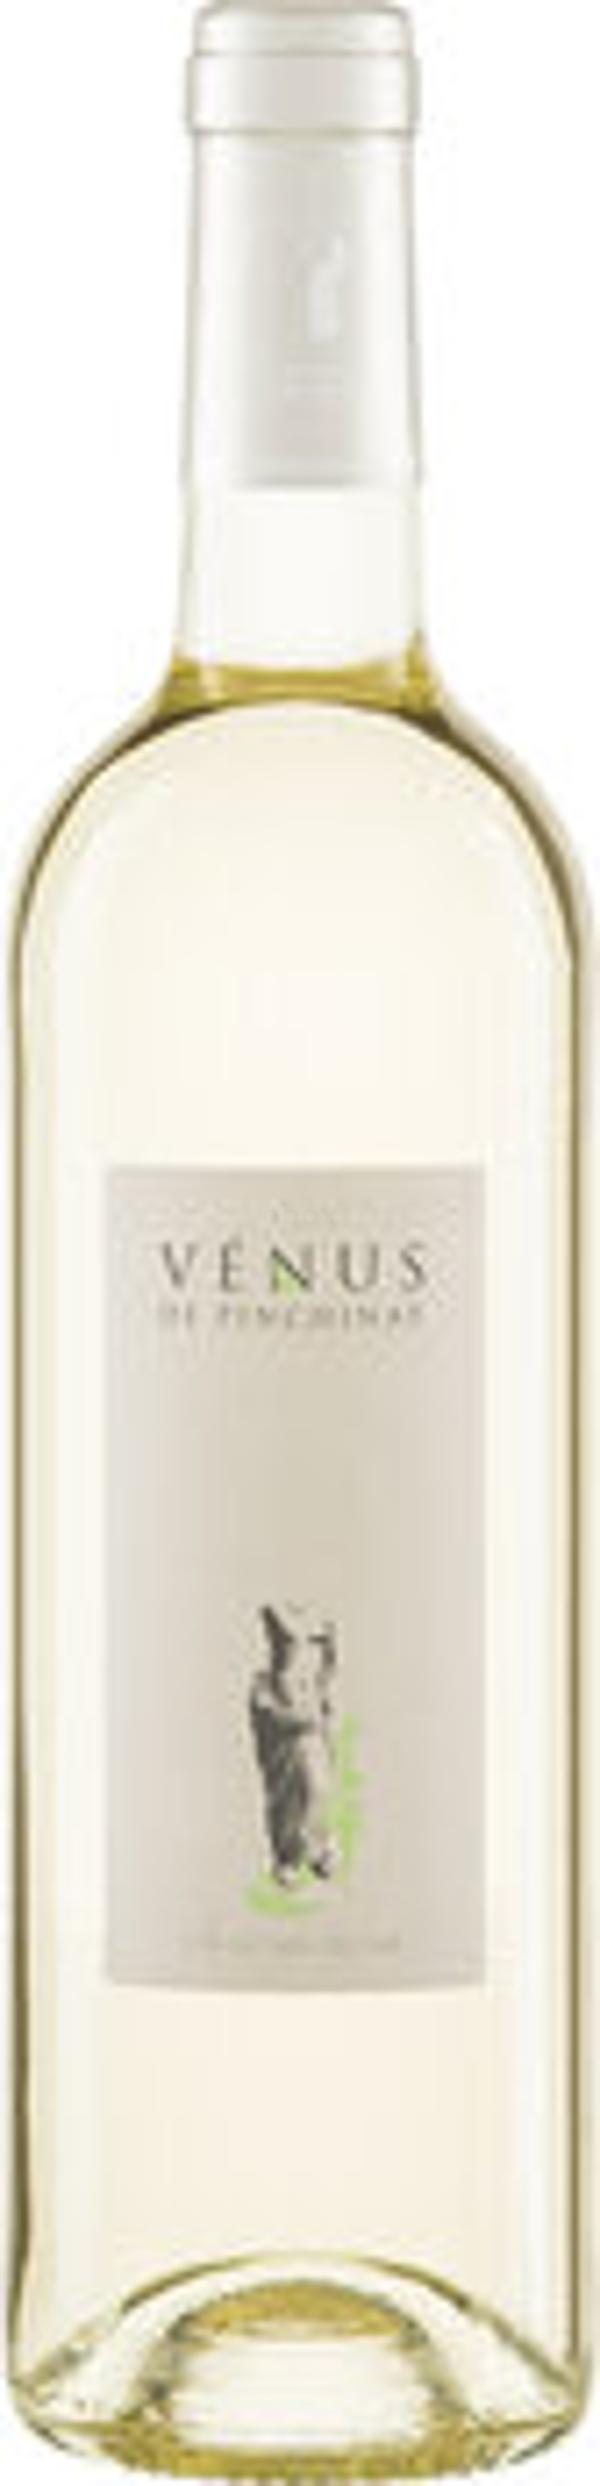 Produktfoto zu 'Venus' Vermentino Blanc IGP, Weißwein trocken 0,75l